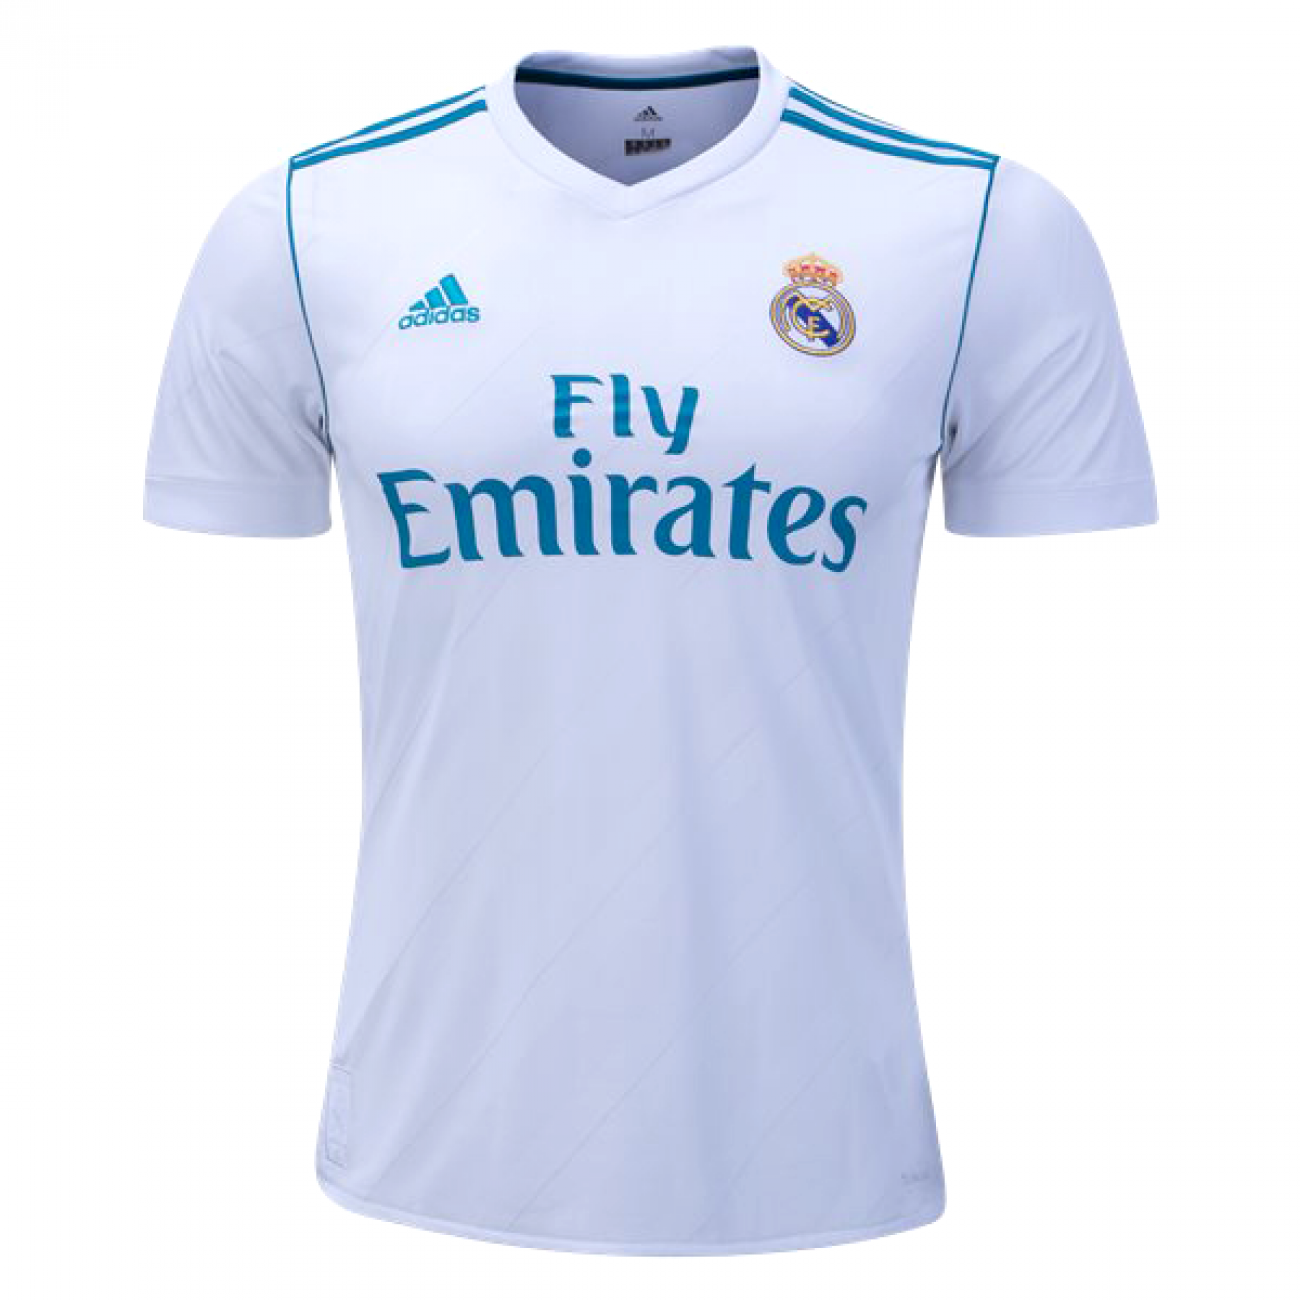 Camiseta Real Madrid 2017-2018, Niño